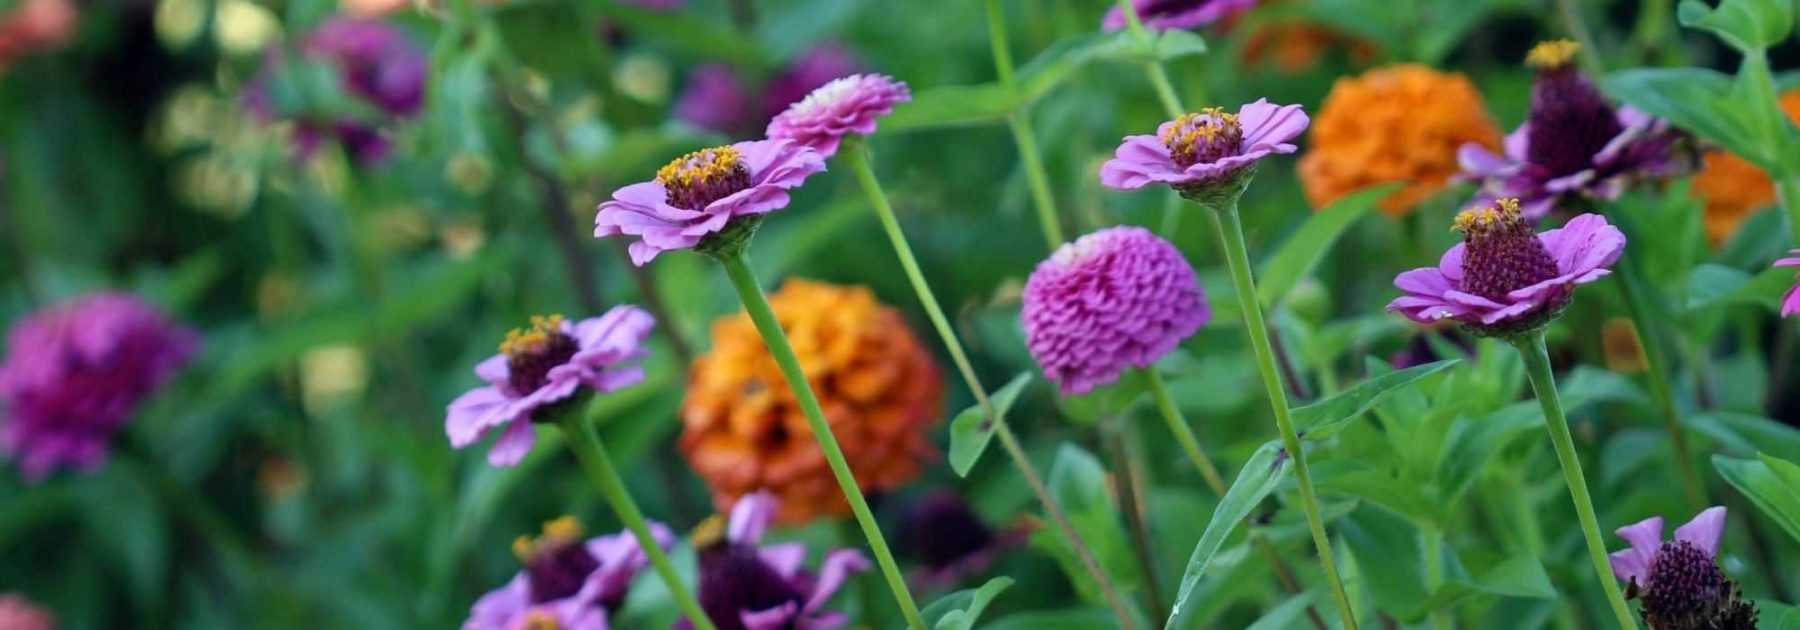 Composer une jardinière d'été : 7 idées - Blog Promesse de fleurs